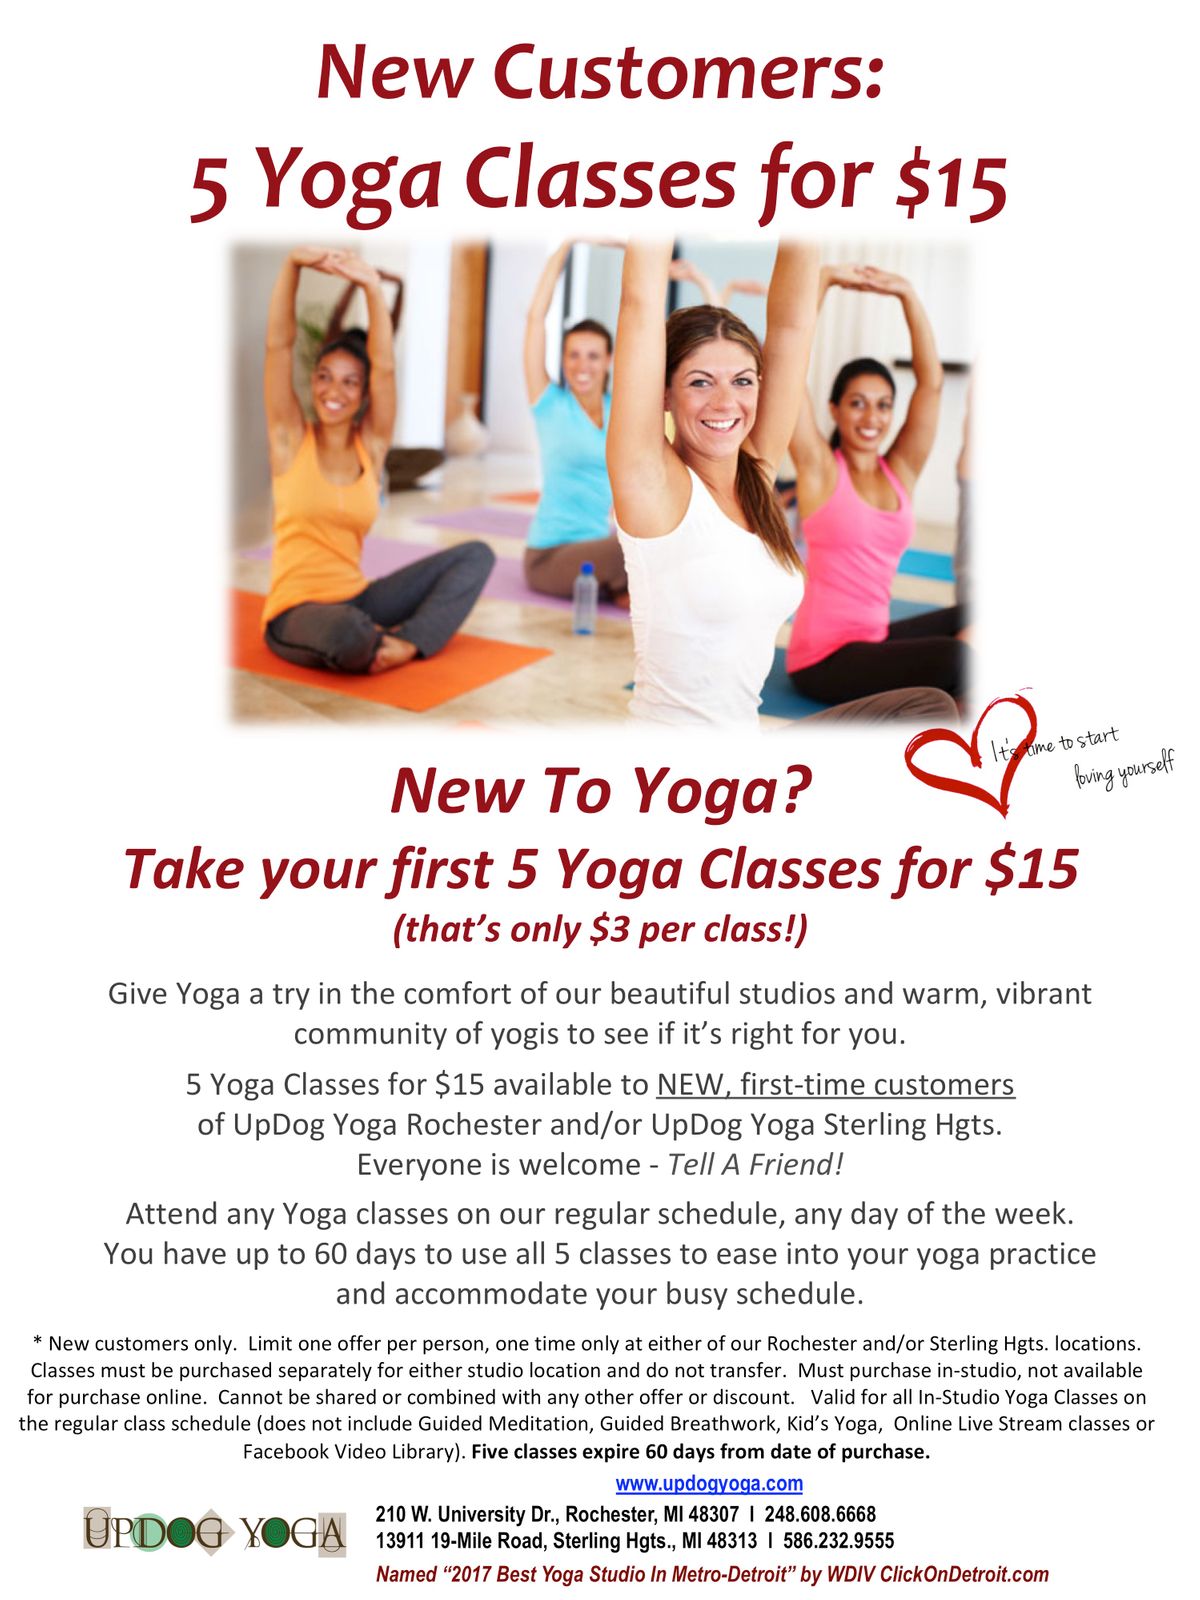 5 Yoga Classes $15_UpDog.jpg